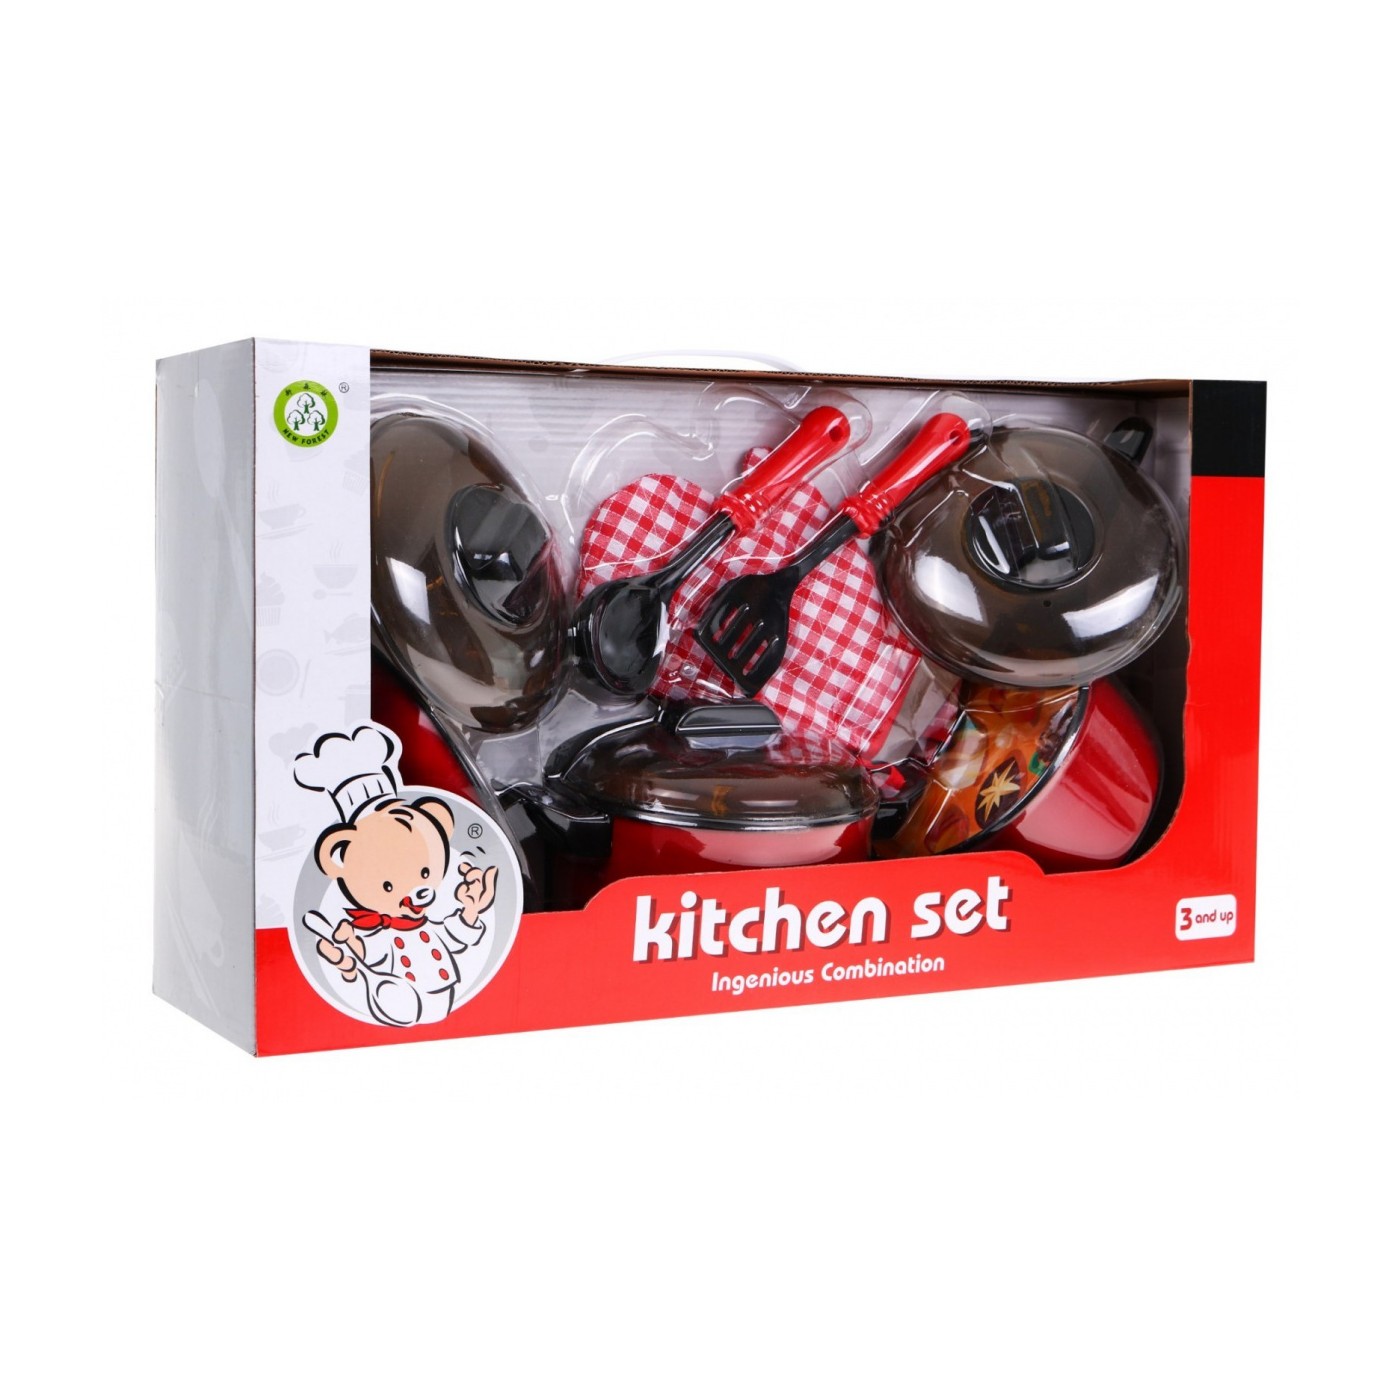 Czerwony zestaw Kucharza dla dzieci 3+ Garnki + Przybory kuchenne + Atrapy jedzenia 22 el.